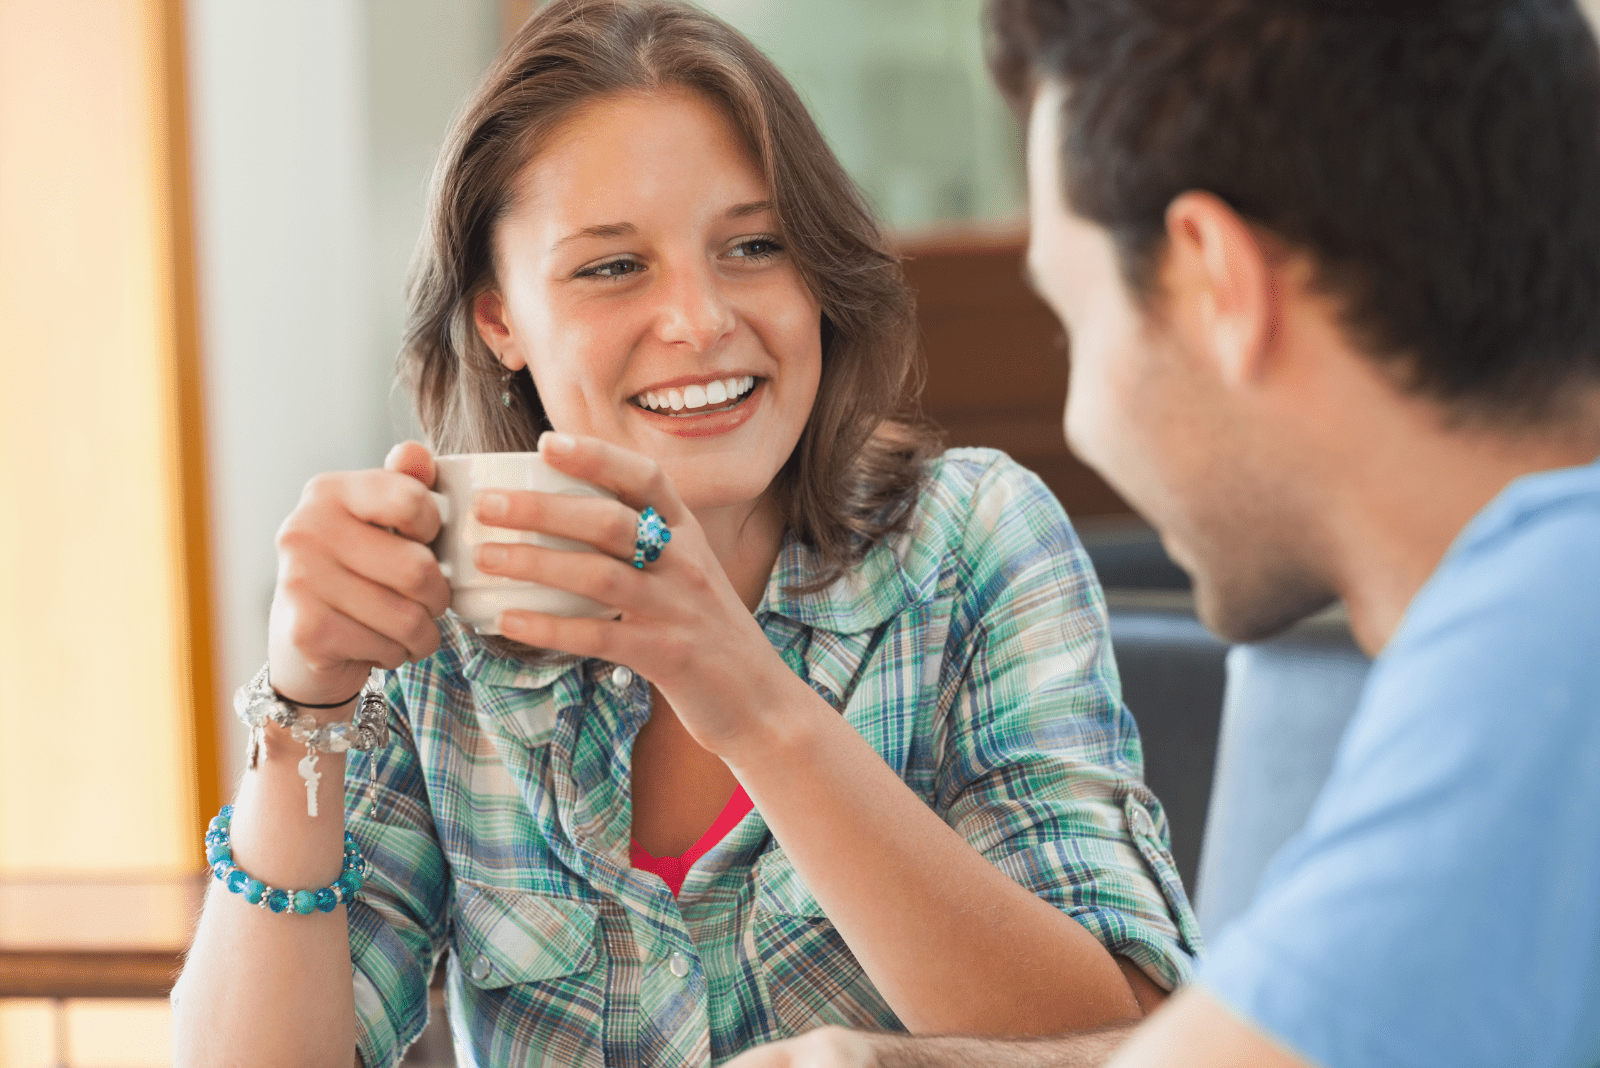 Una donna sorridente tiene in mano una tazza e stanno parlando